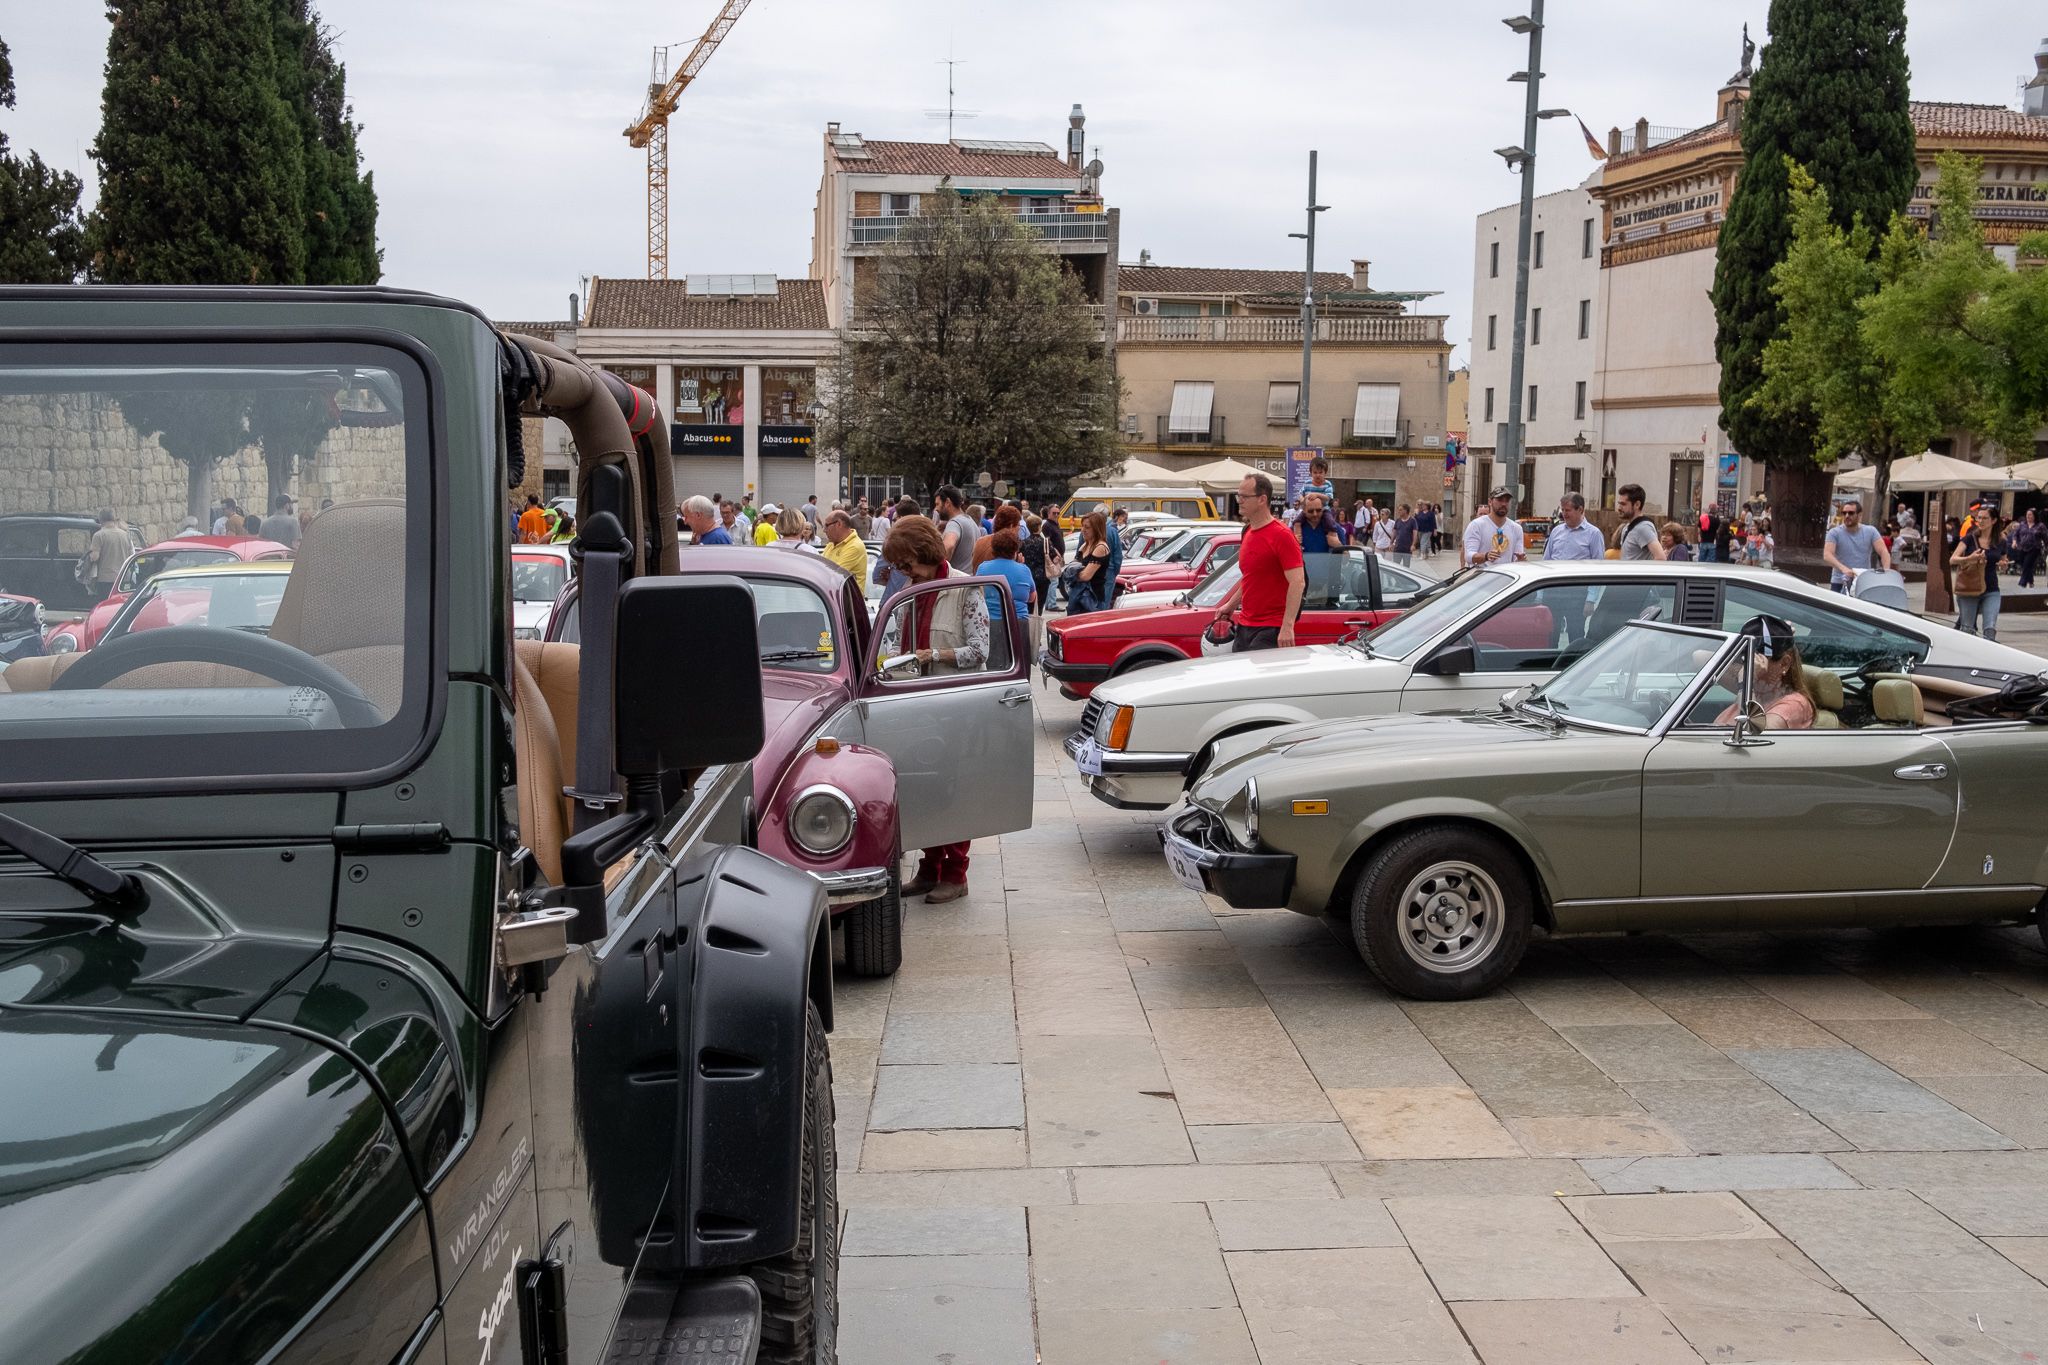 Vehicles clàssics surten al carrer amb el 8è Ral·li Mas Gener - Monestir. FOTO: Ale G.